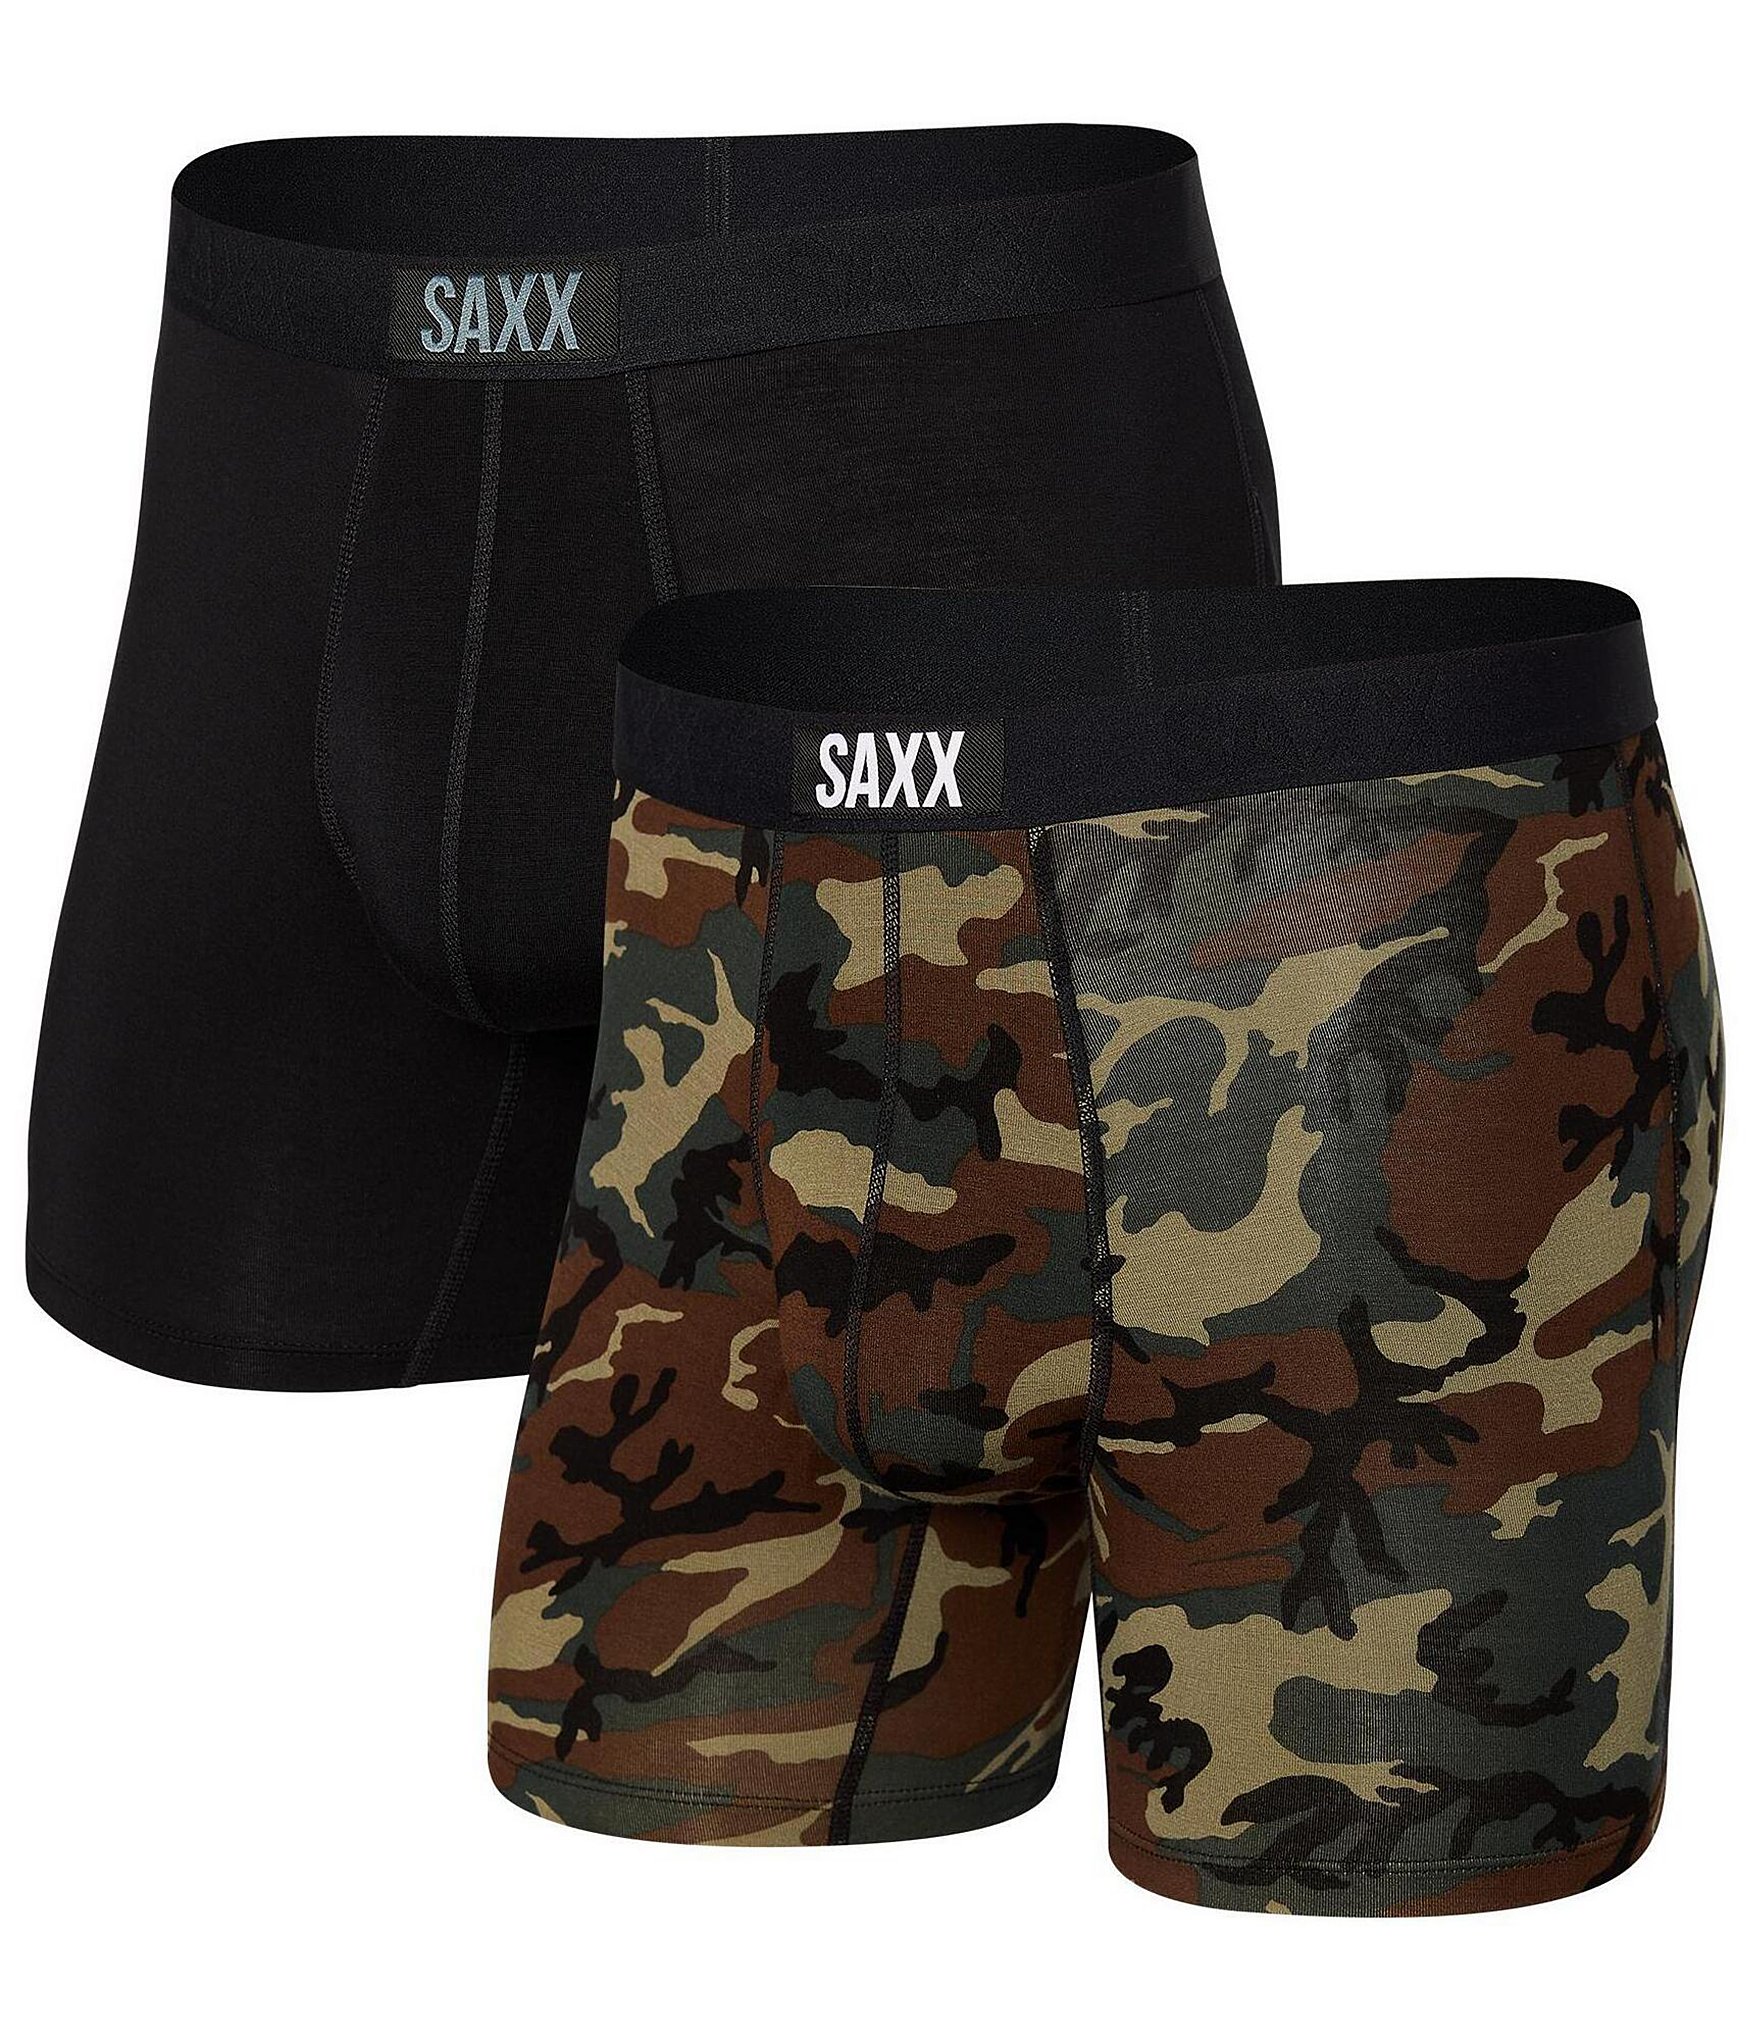 SAXX Dazed Argyle Ultra Super Soft 5 Inseam Boxer Briefs 2-Pack